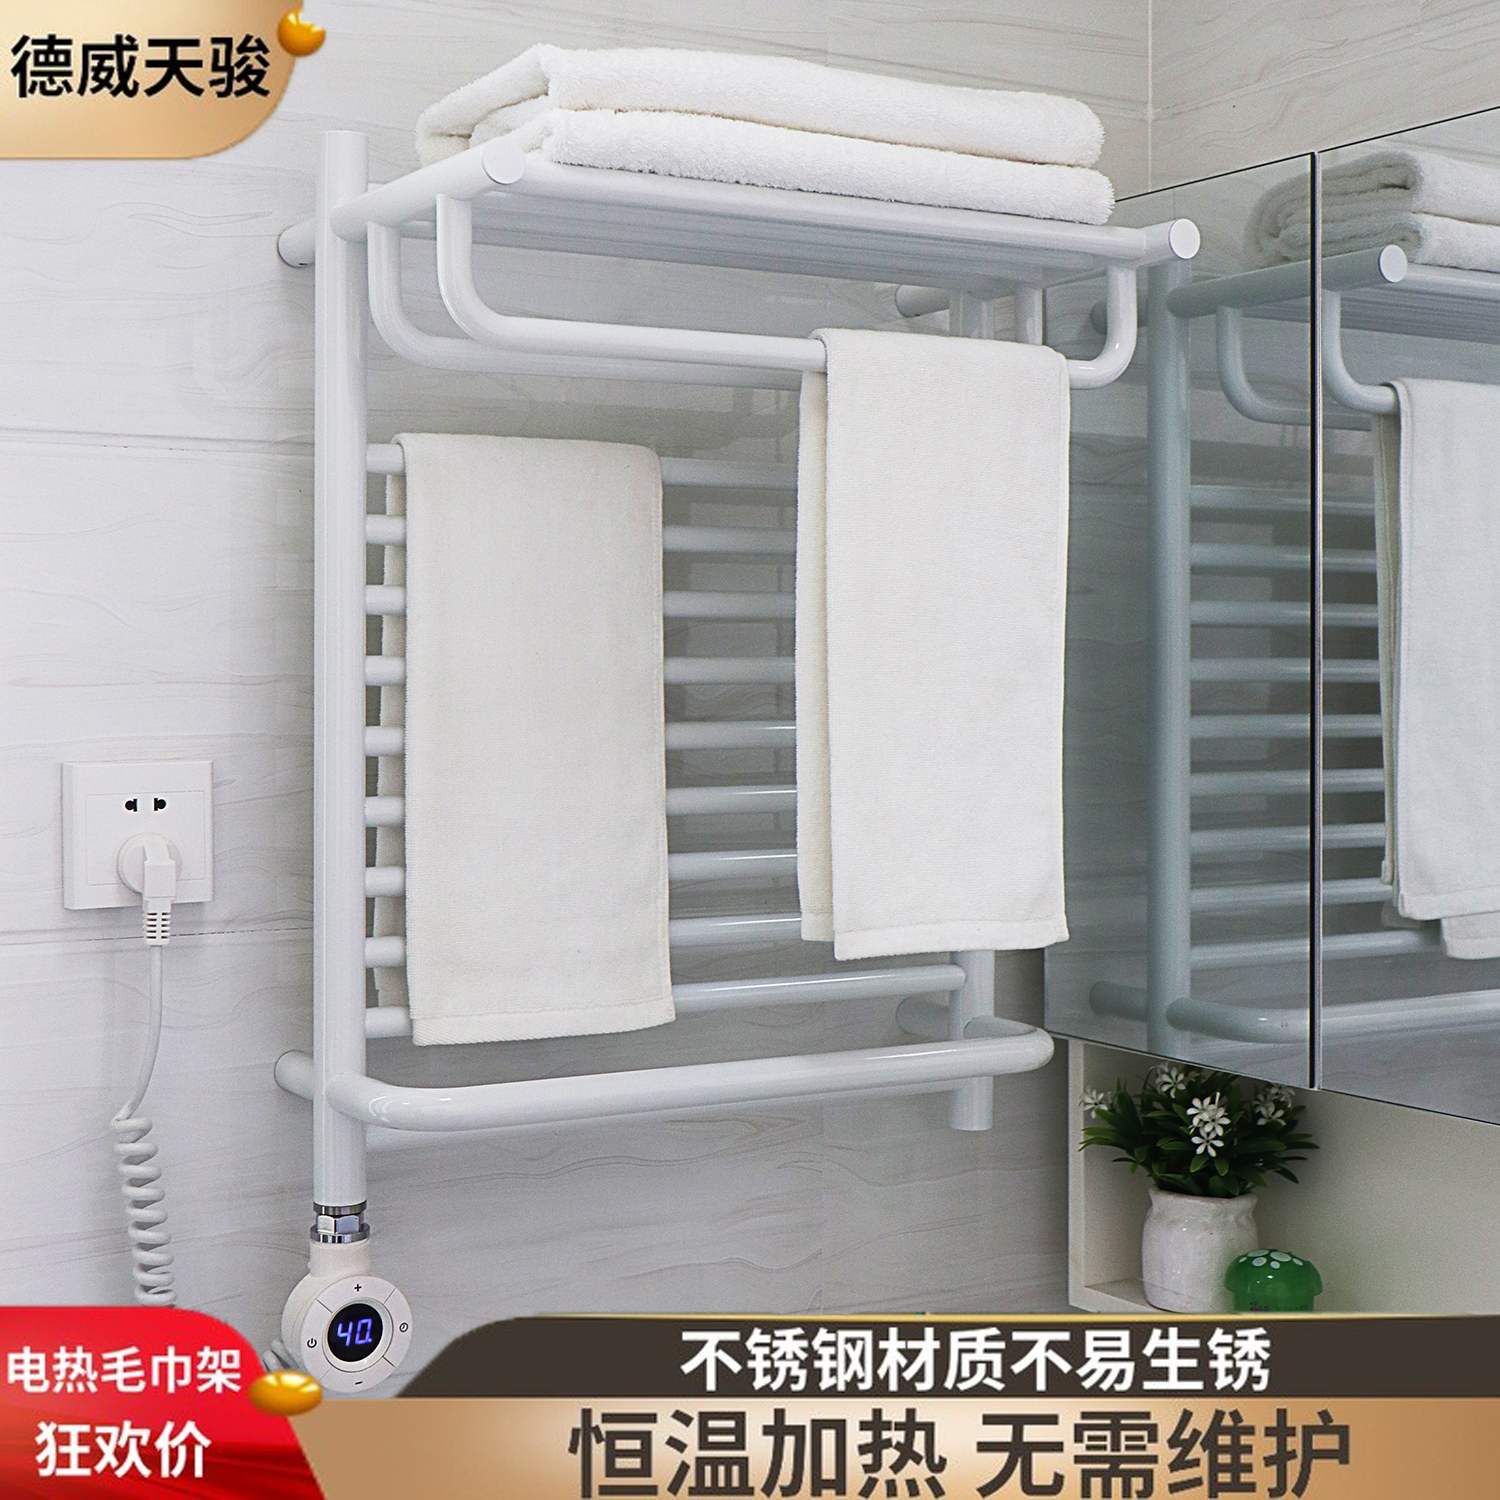 电热毛巾架壁挂浴巾家用恒温智能会发碳纤维加烘干卫生间